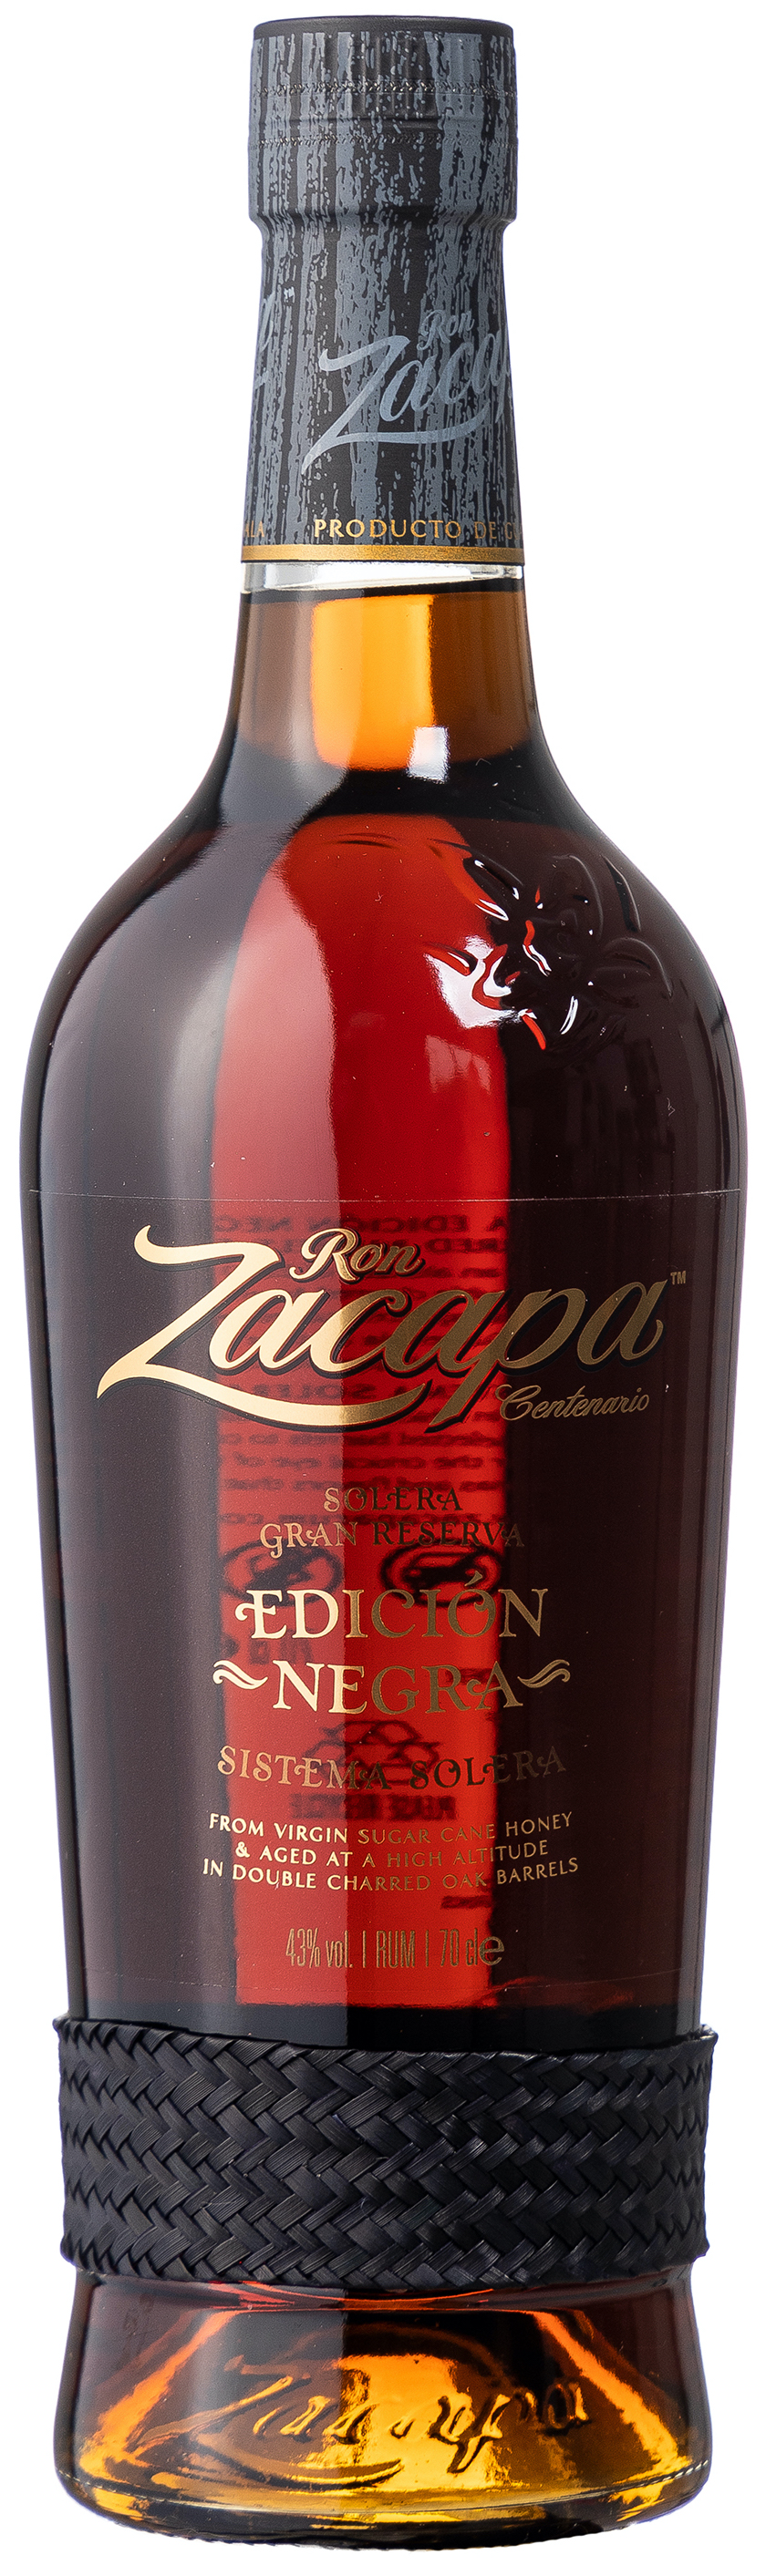 Ron Zacapa Edicion Negra Limited Edition 43% vol. 0,7L